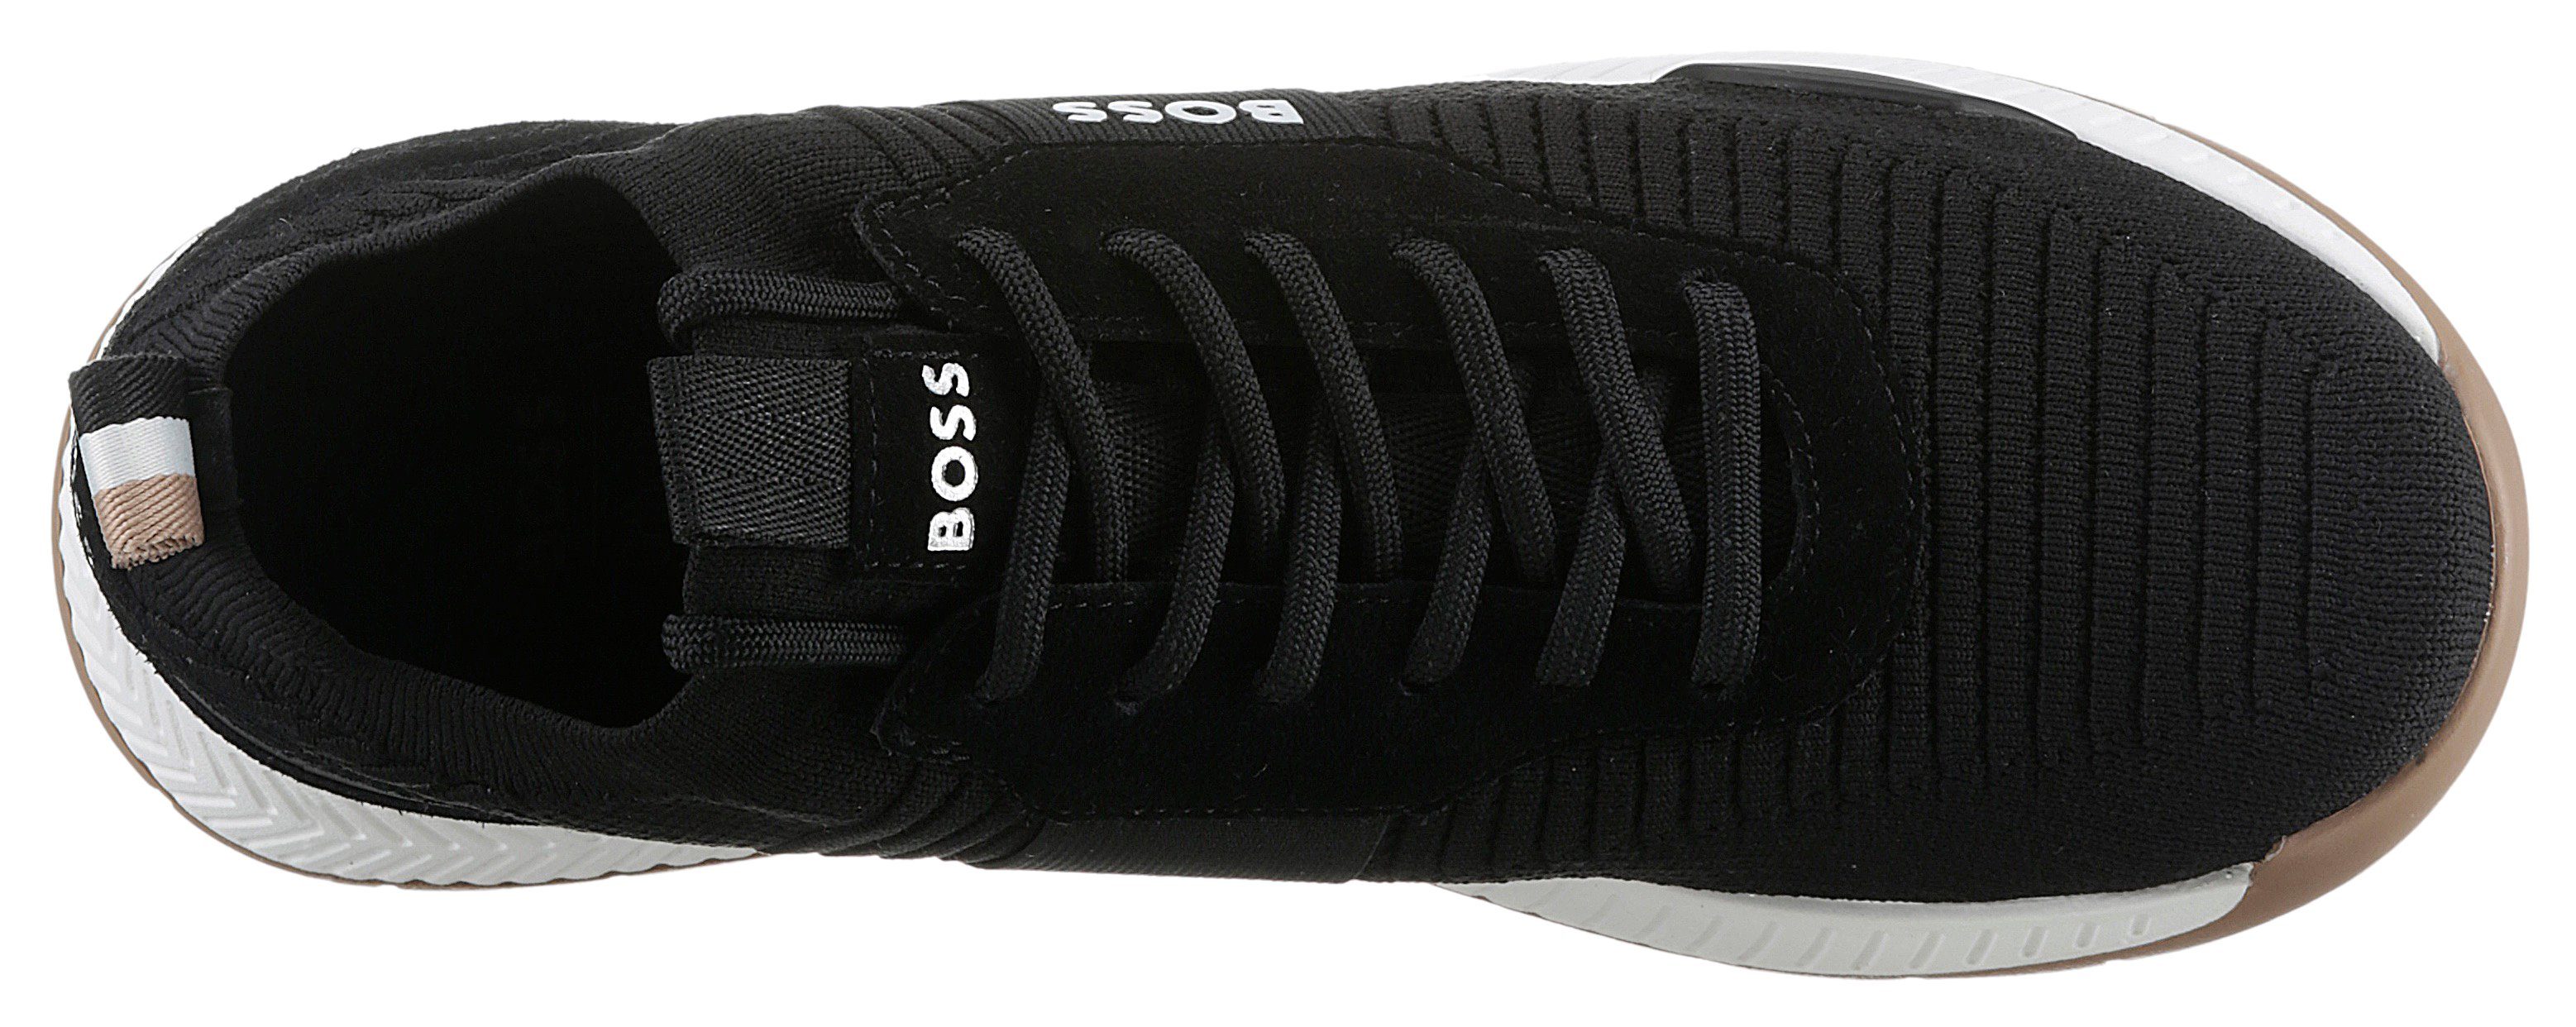 Sneaker Slip-On Einstieg BOSS Titanium_Runn schwarz elastischem mit